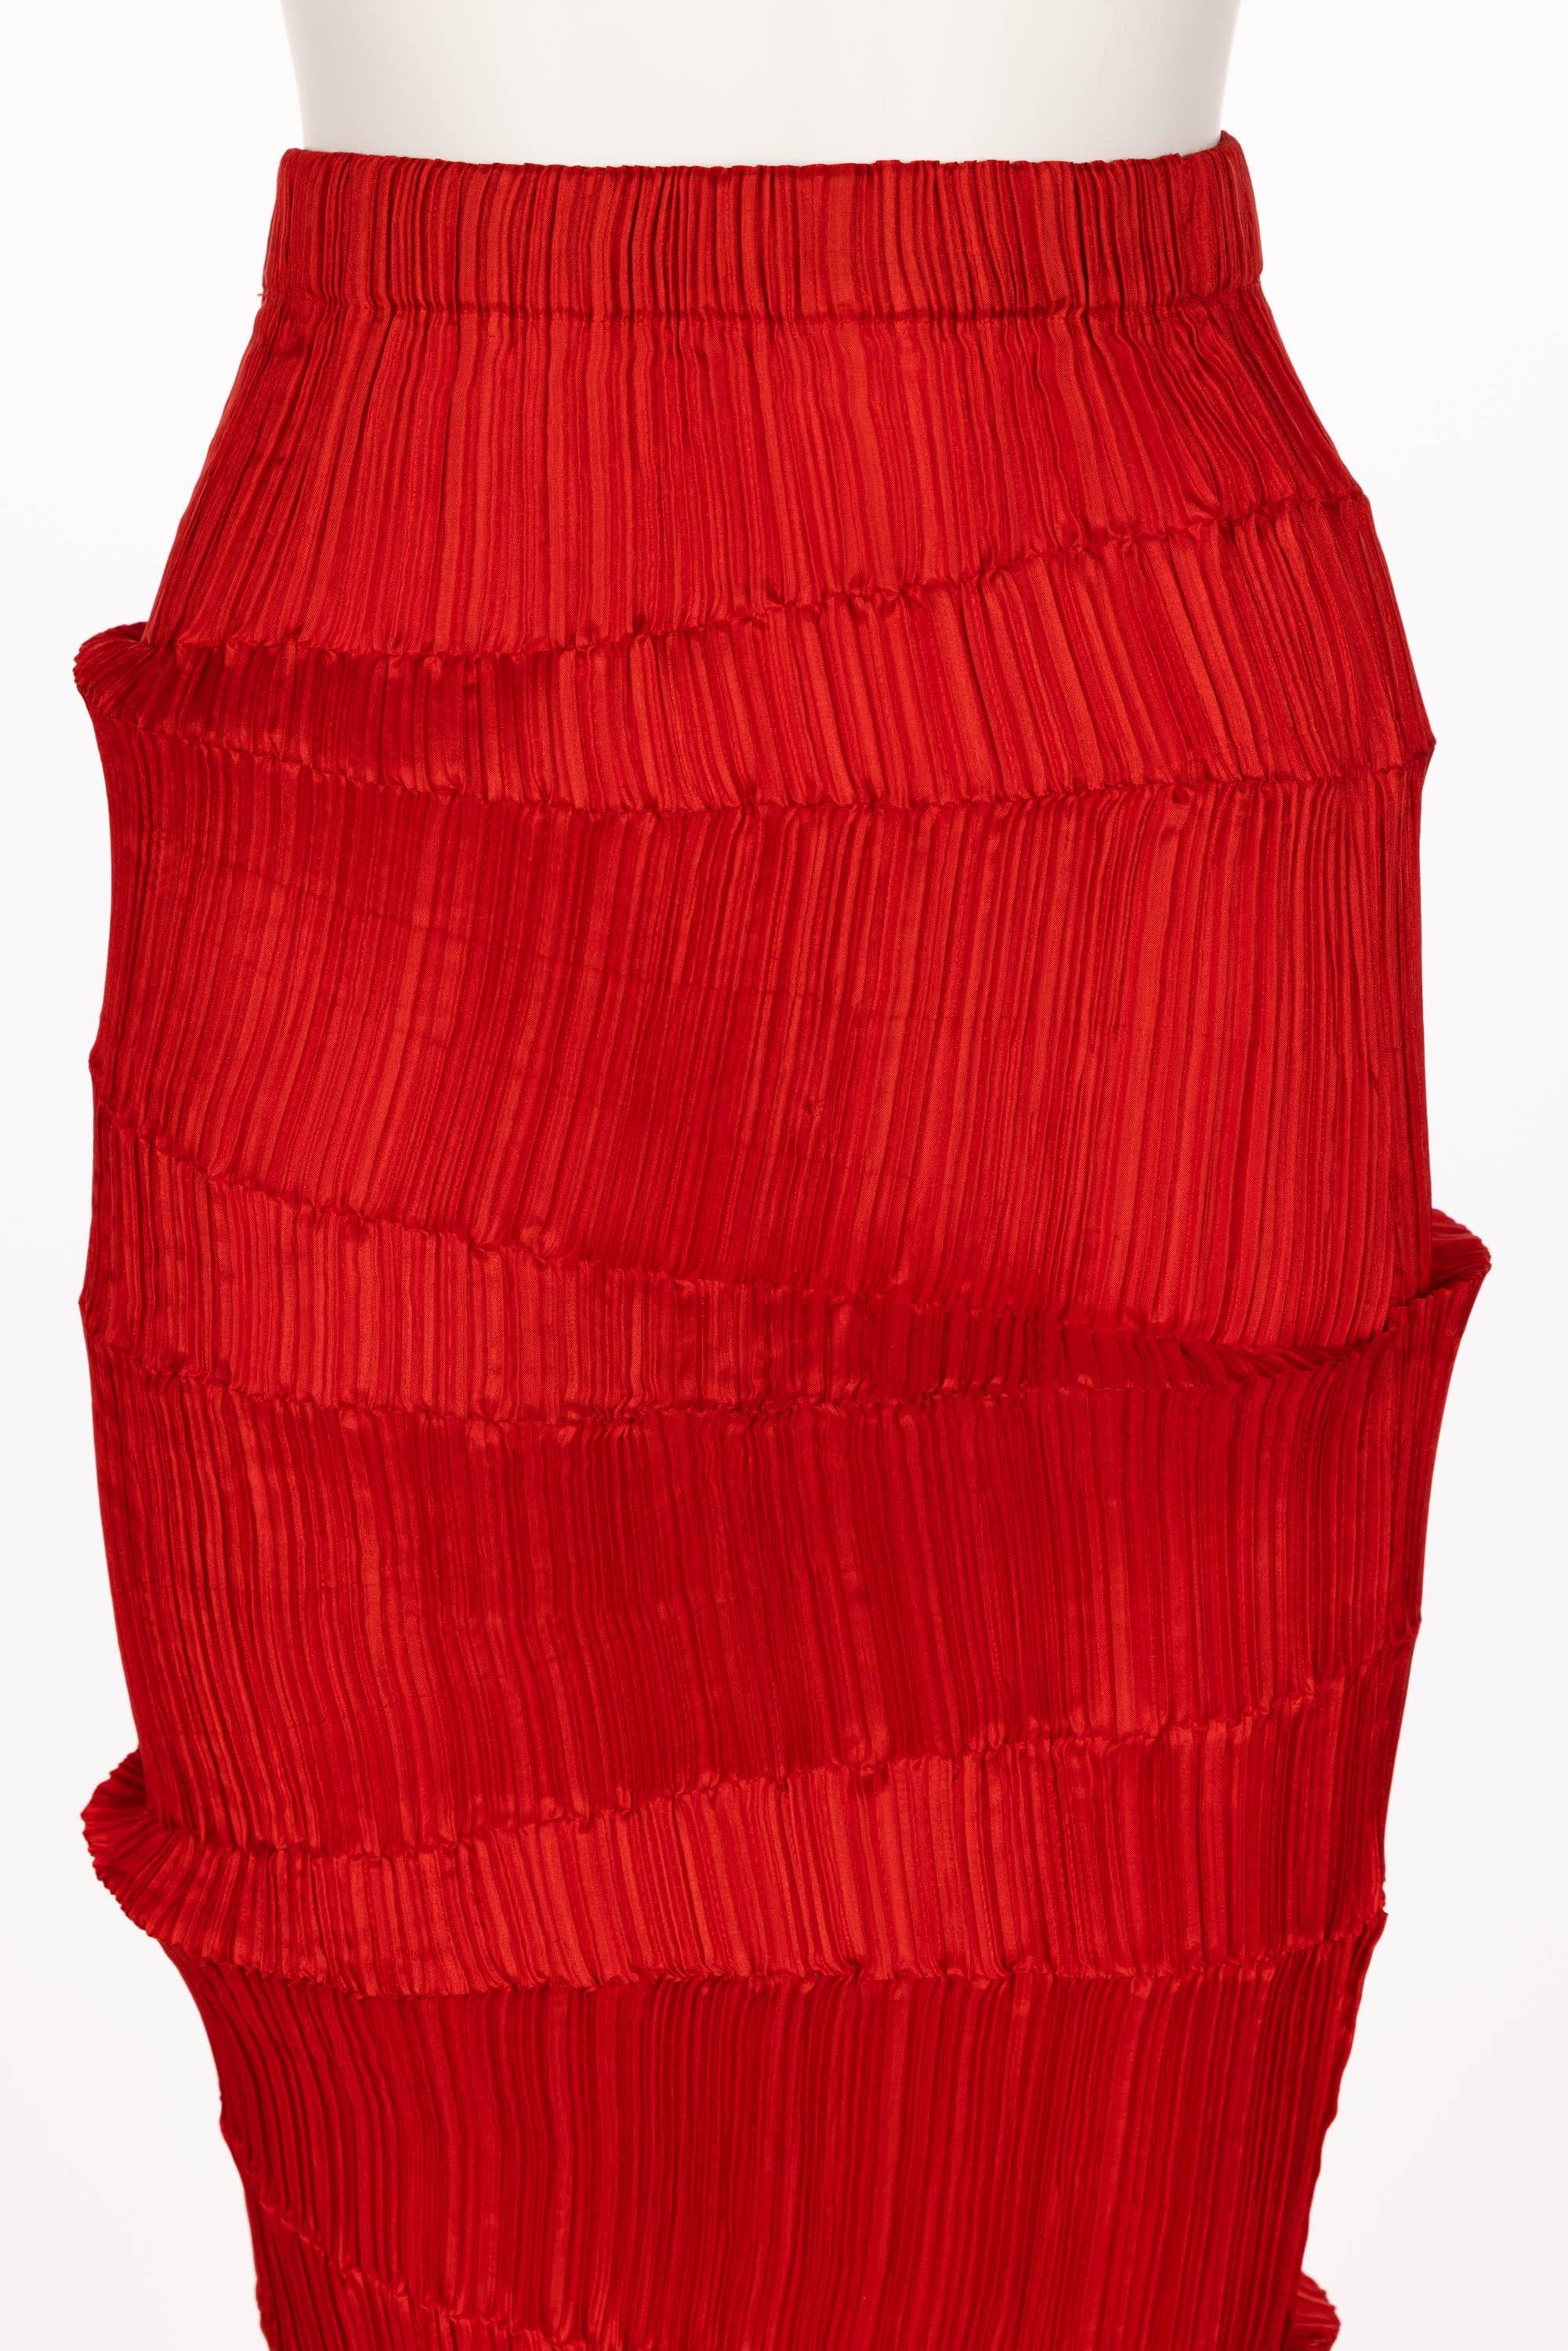 Women's Issey Miyake Pleated Red Maxi Skirt 1990s